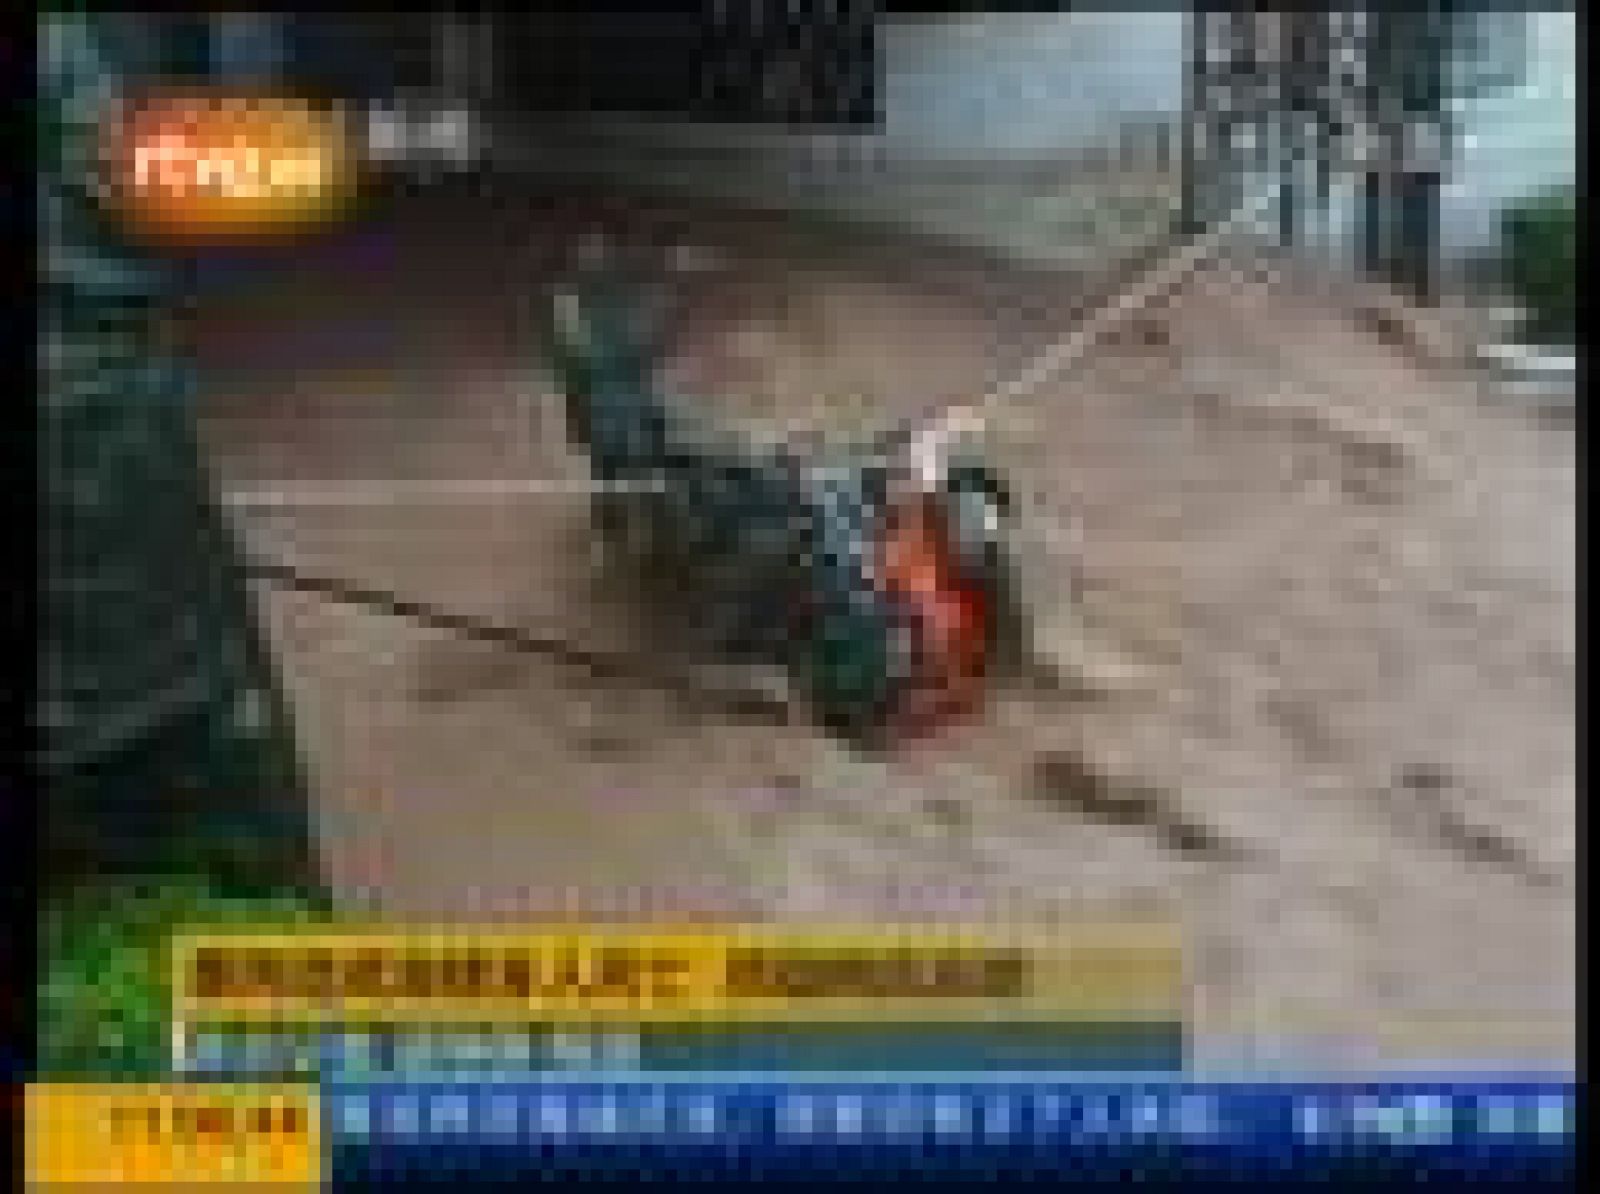 Las lluvias torrenciales en China de los últimos días han provocado la muerte de al menos 10 ciudadanos y han obligado a evacuar a unas 120.000 personas. Los daños materiales ascienden a casi 100 millones de dólares.